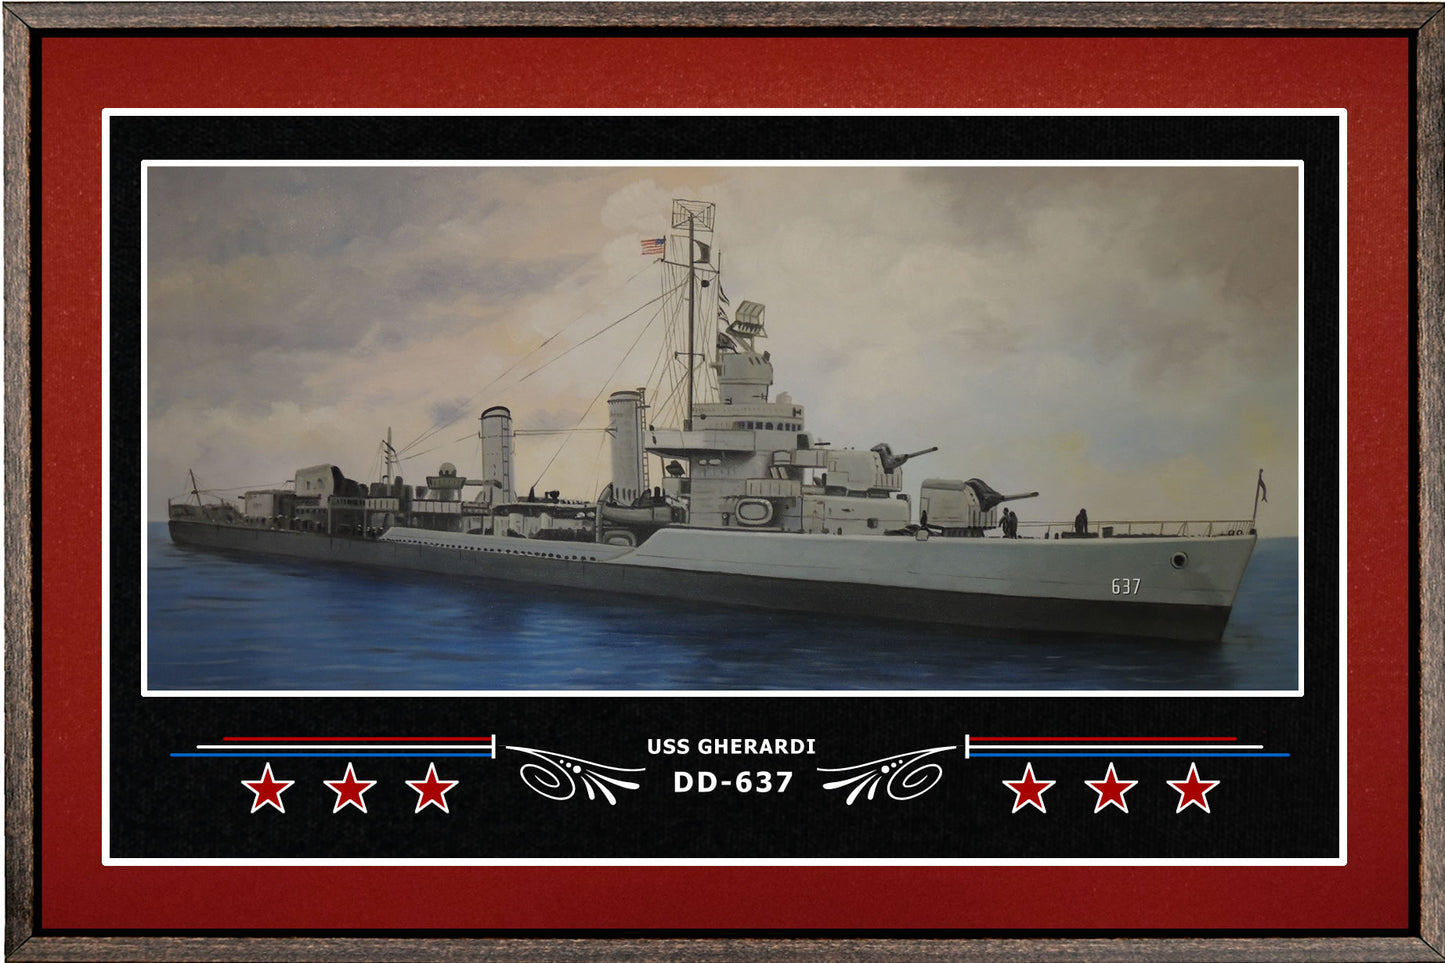 USS GHERARDI DD 637 BOX FRAMED CANVAS ART BURGUNDY